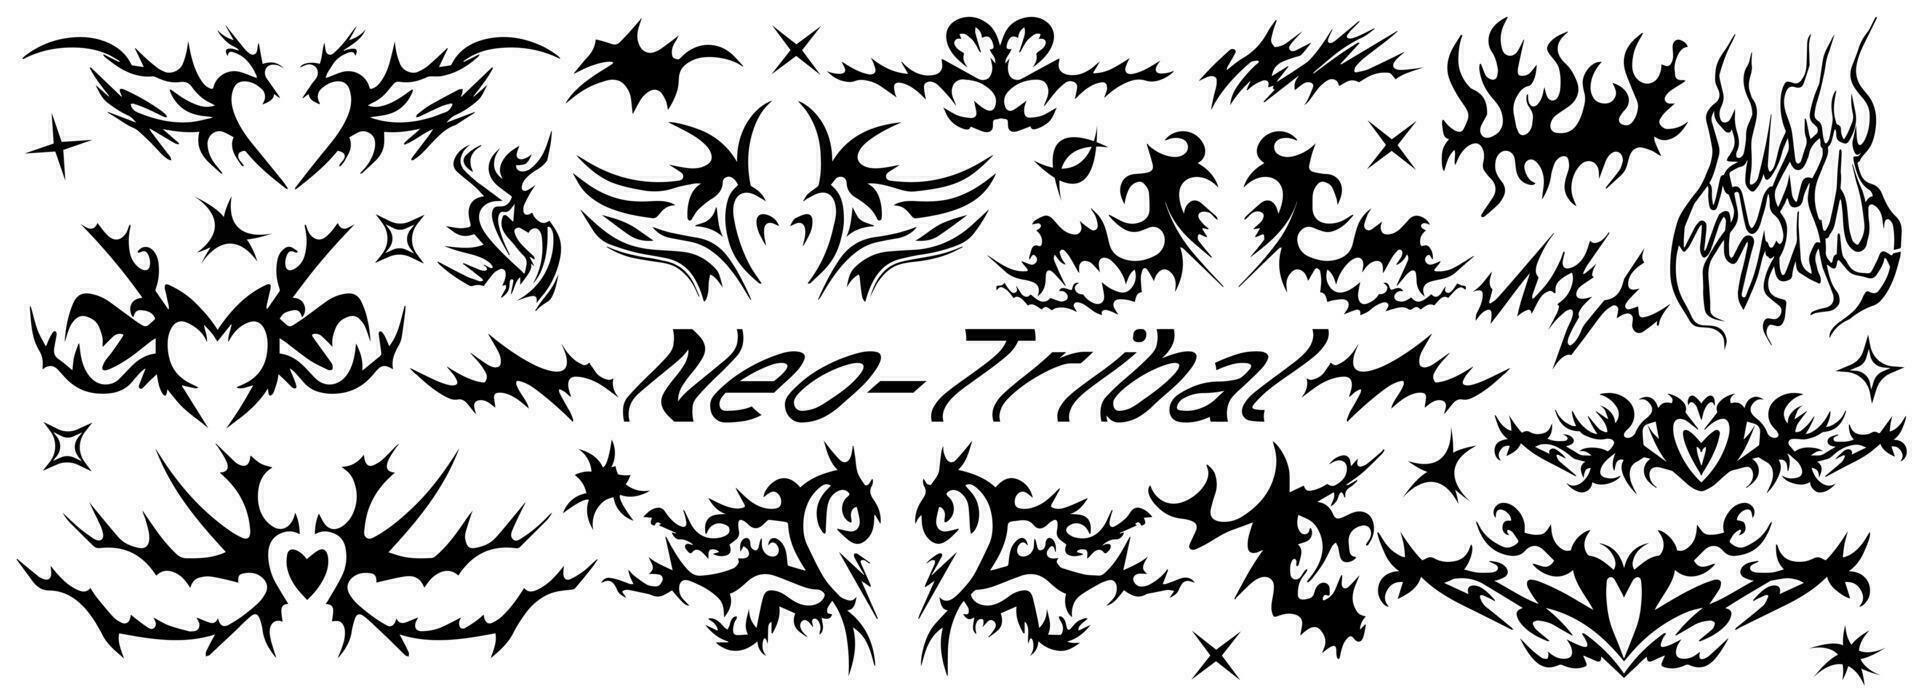 neo tribal tatuaje colocar, neón céltico gótico ciber cuerpo ornamento  formas equipo, resumen hawaiano signo. maorí manga símbolo y2k polinesio  metal resumen simetría remolino ala. vector silueta clipart 33862611 Vector  en Vecteezy